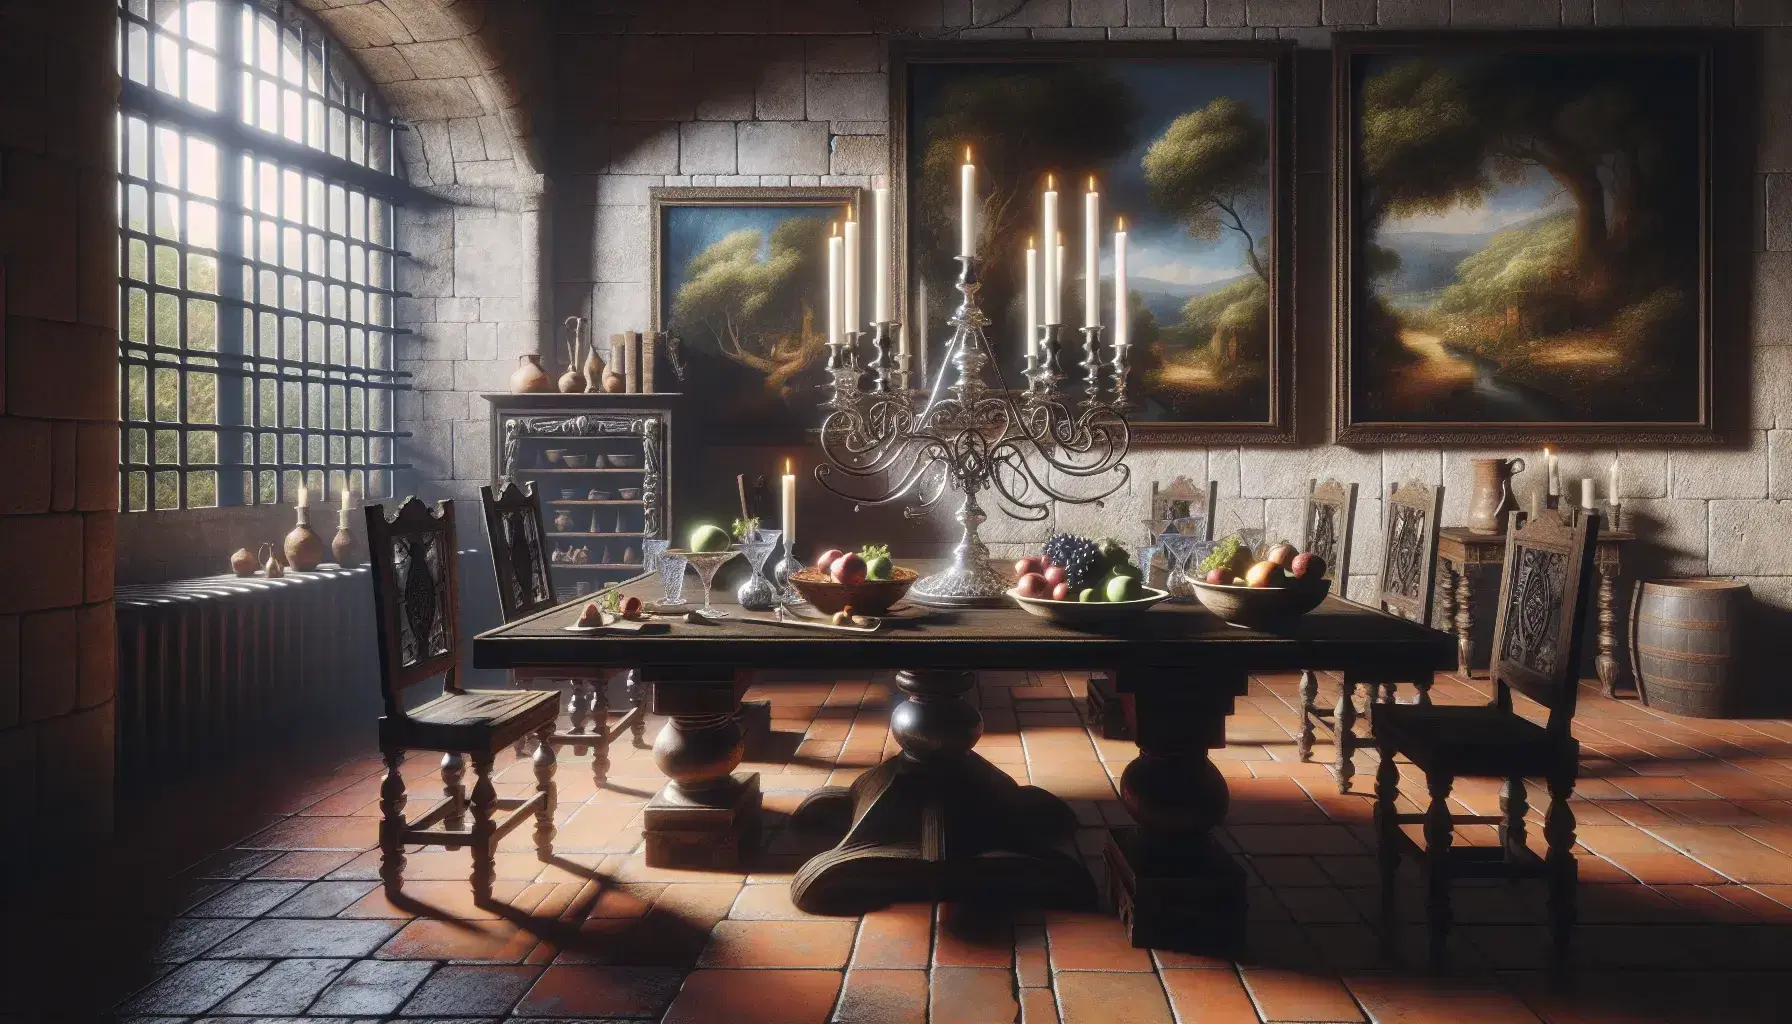 Scena di sala da pranzo antica con tavolo in legno scuro, candelabro d'argento, frutta su piatto ceramico e bicchiere di vino, senza persone.